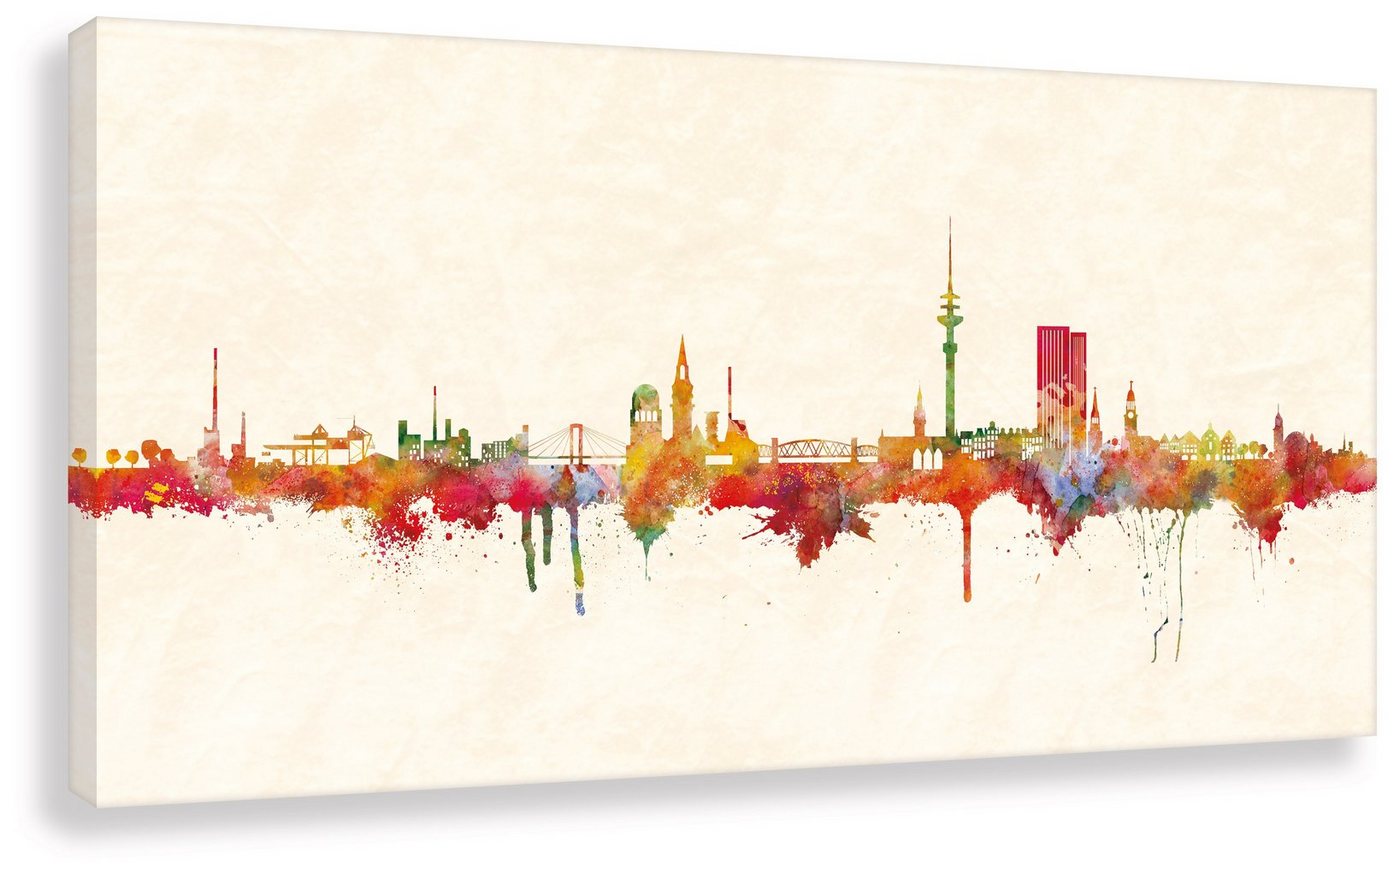 Leinwando Gemälde Leinwandbild von der Stadt Hamburg / Hamburger Skyline Panorama Bild Farbe / Wohnzimmerbild fertig zum aufhängen von Leinwando